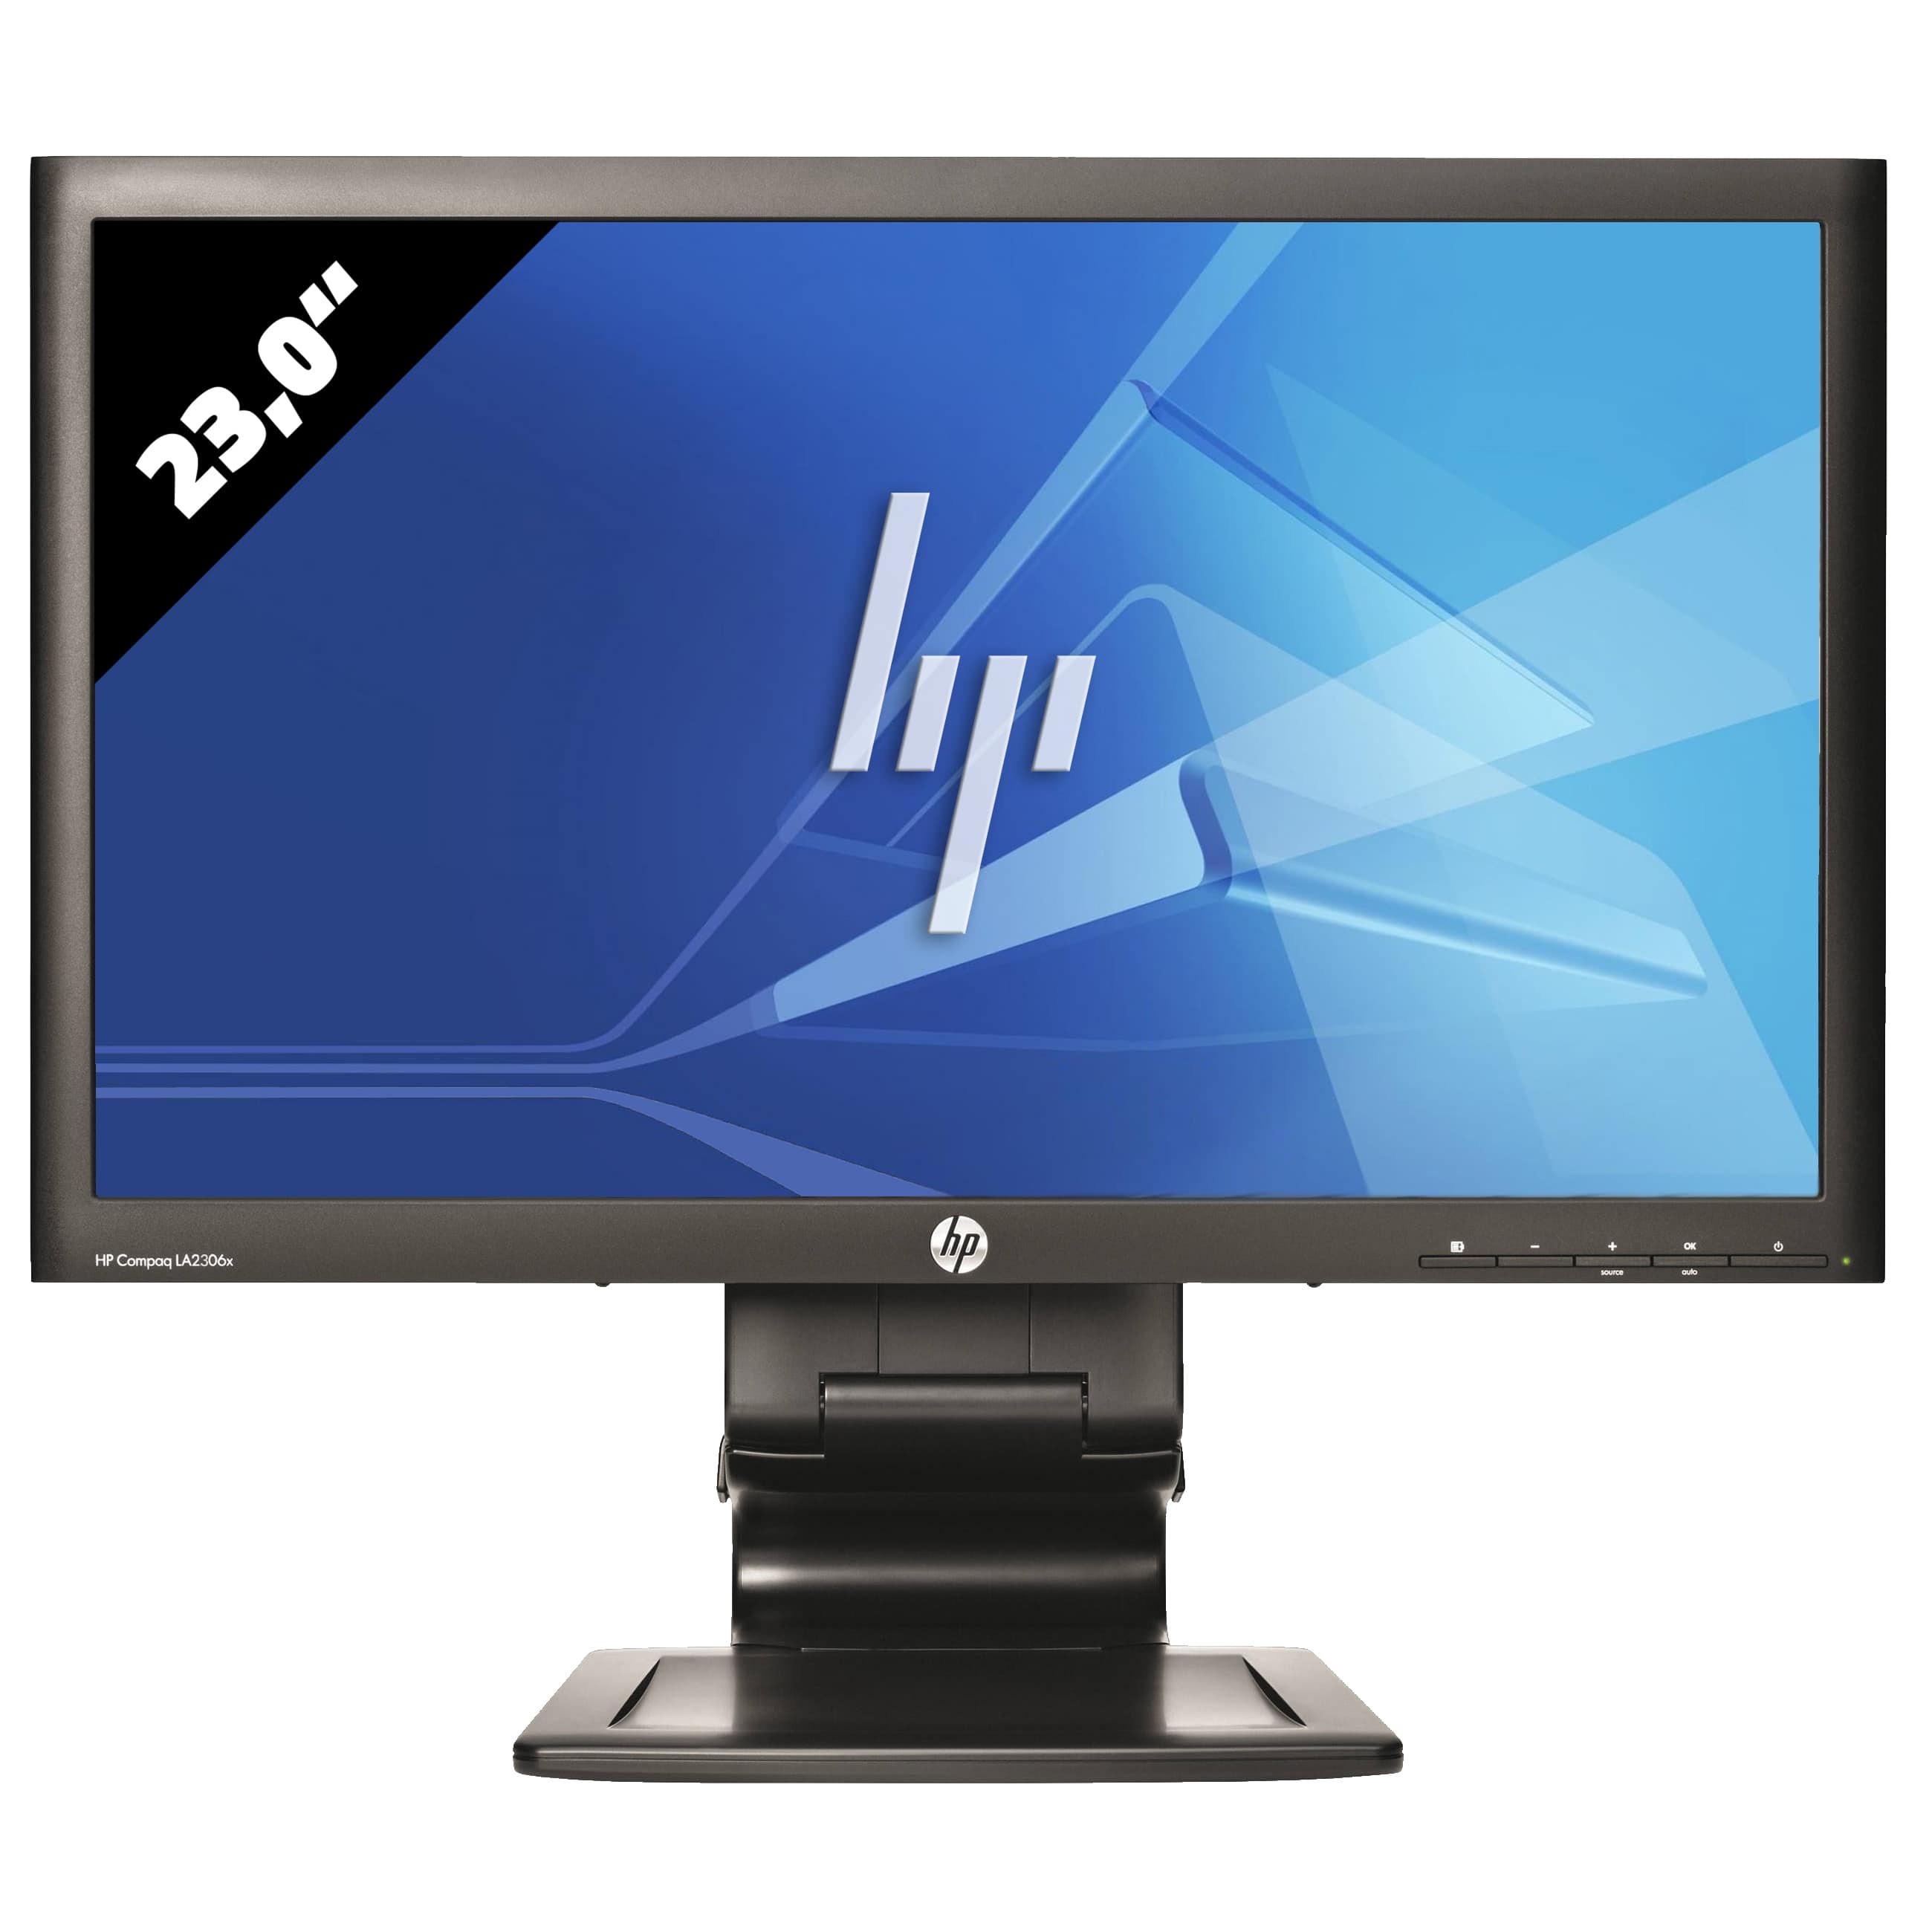 Obrázok monitoru HP LA 2306x - 23,0 Palcov - Čierny